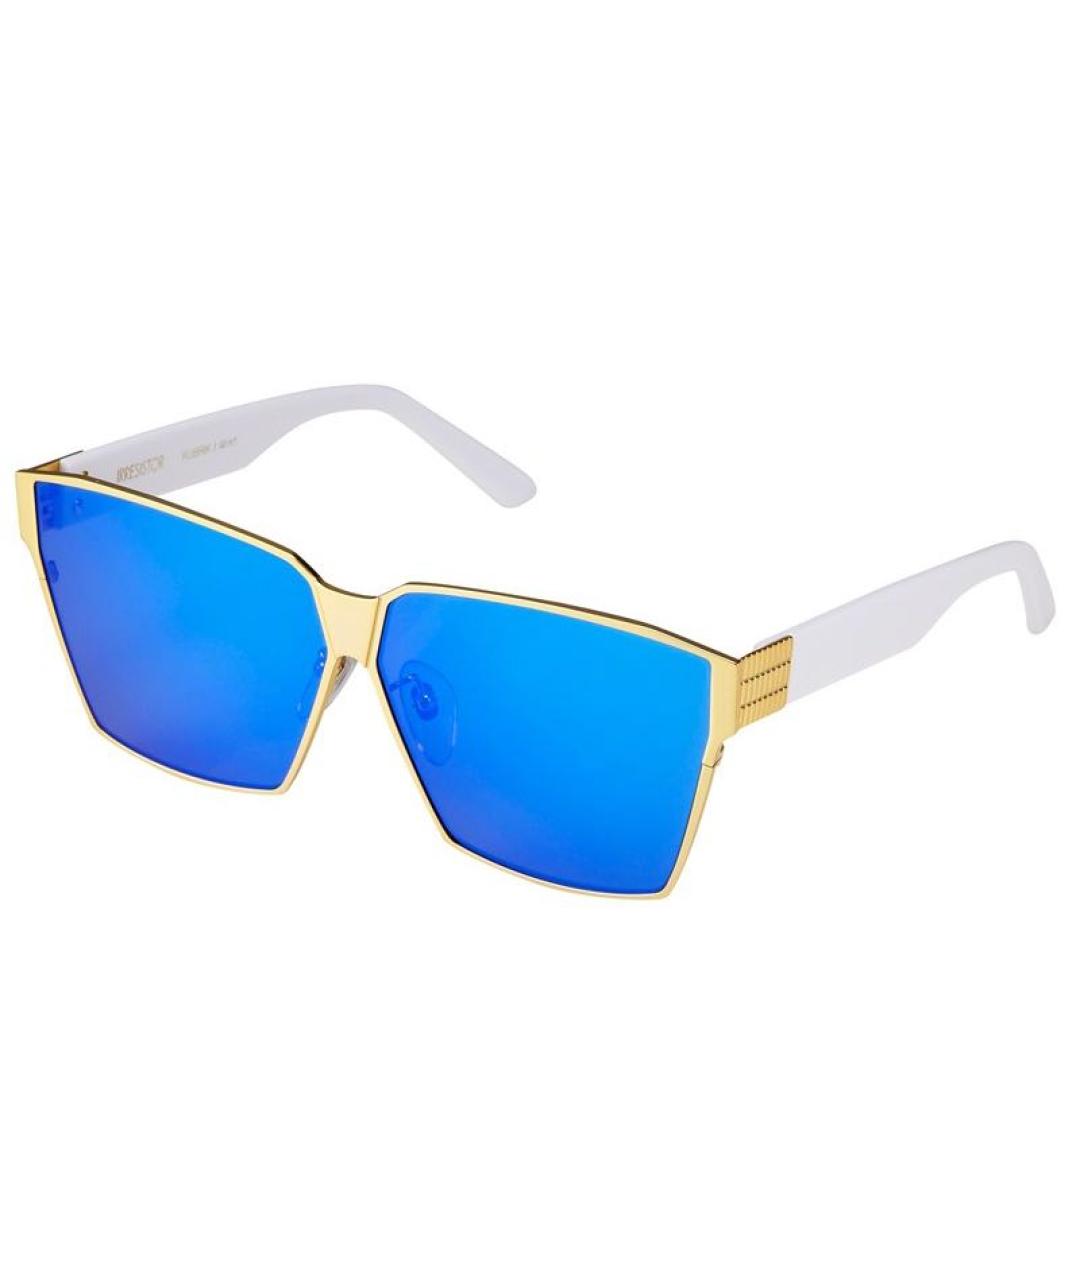 IRRESISTOR Синие металлические солнцезащитные очки, фото 1